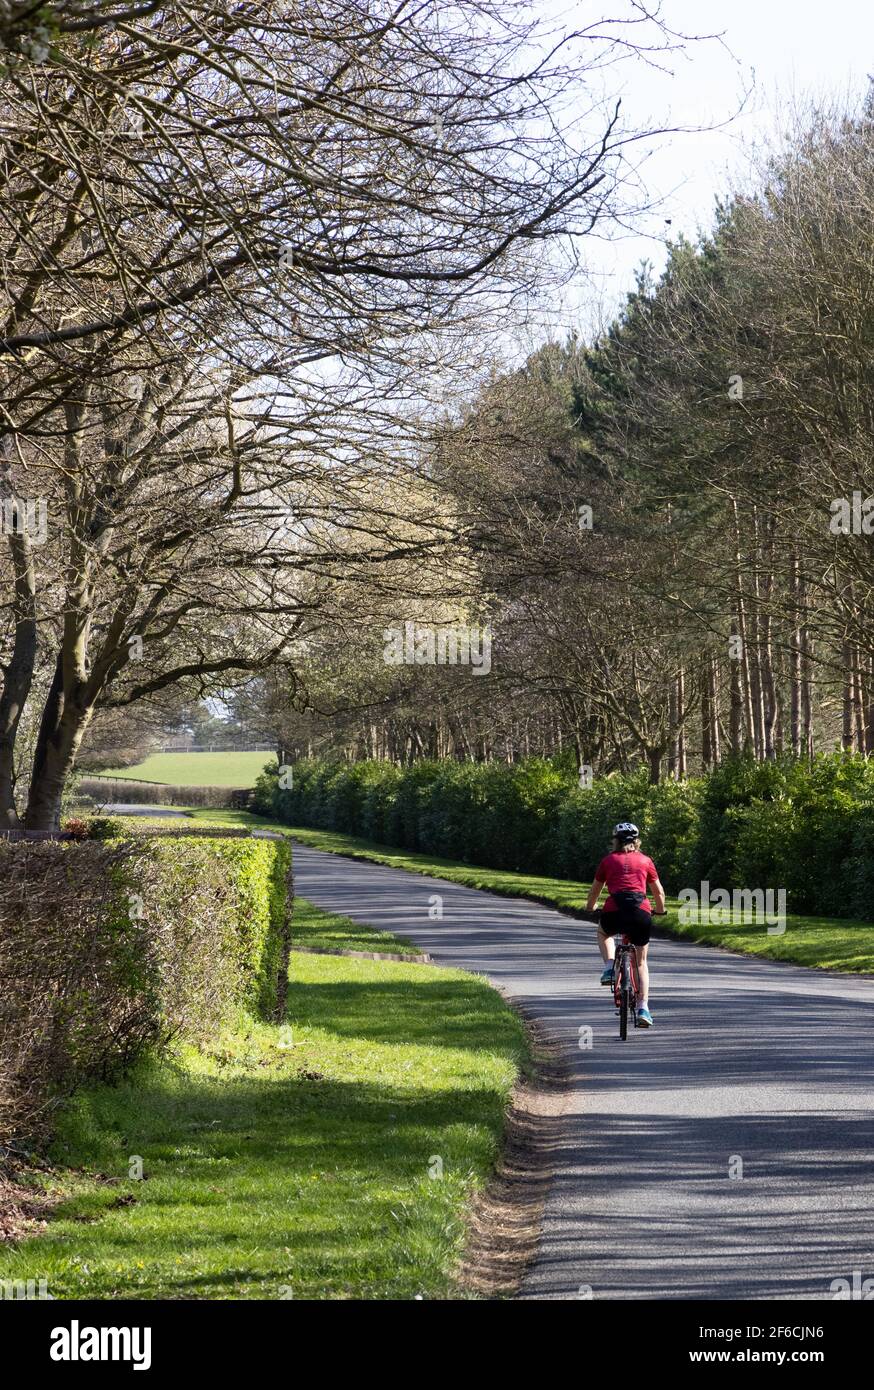 Frau mit dem Fahrrad in Großbritannien; eine alleinerziehende Frau, die allein auf einer Landstraße an einem sonnigen Frühlingstag Fahrrad fährt, Rückansicht, Lifestyle-Beispiel, Cambridgeshire UK Stockfoto